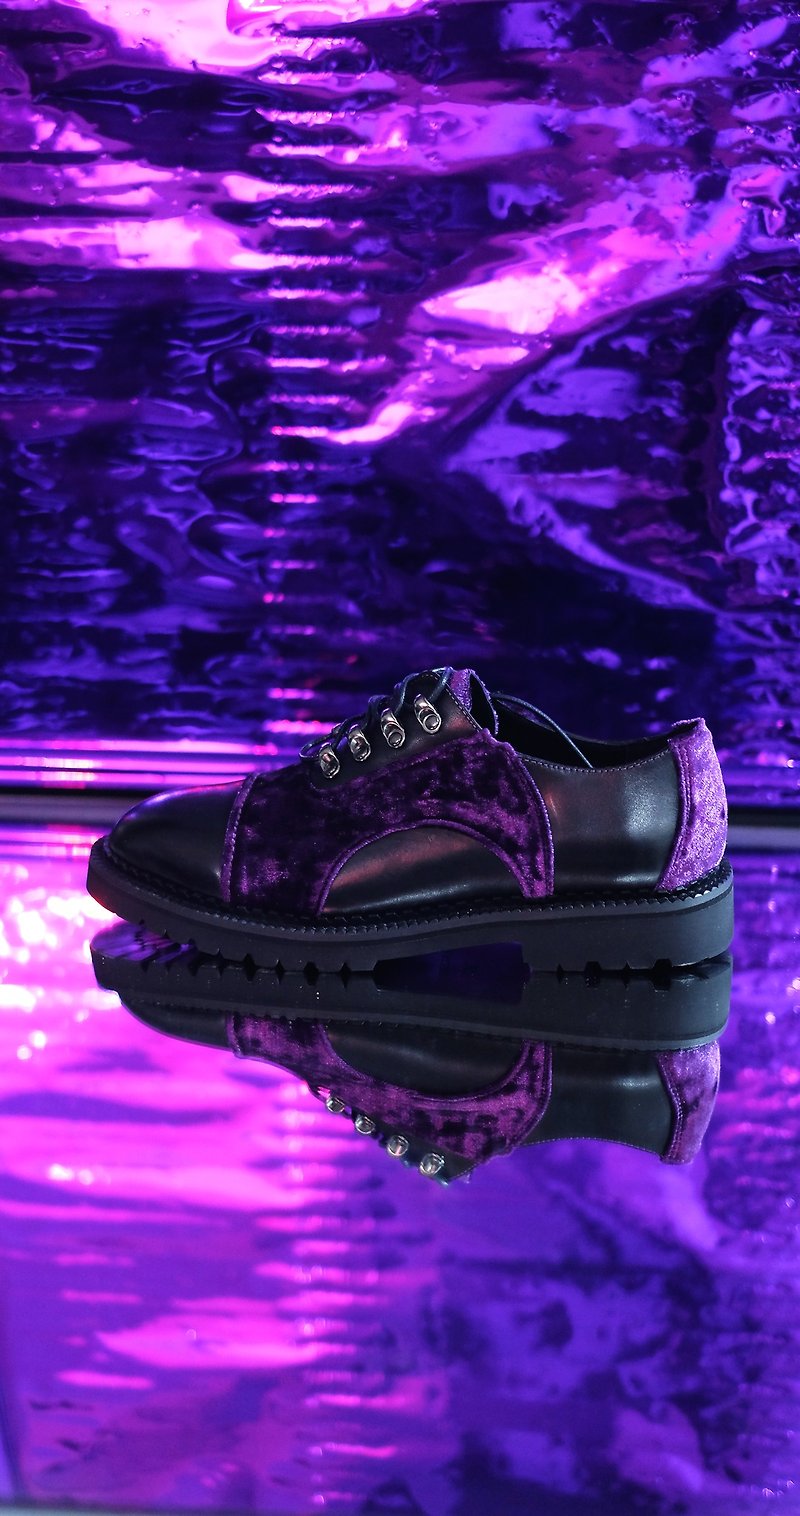 Purple Velvet lady shoes. - รองเท้าลำลองผู้หญิง - หนังแท้ สีม่วง